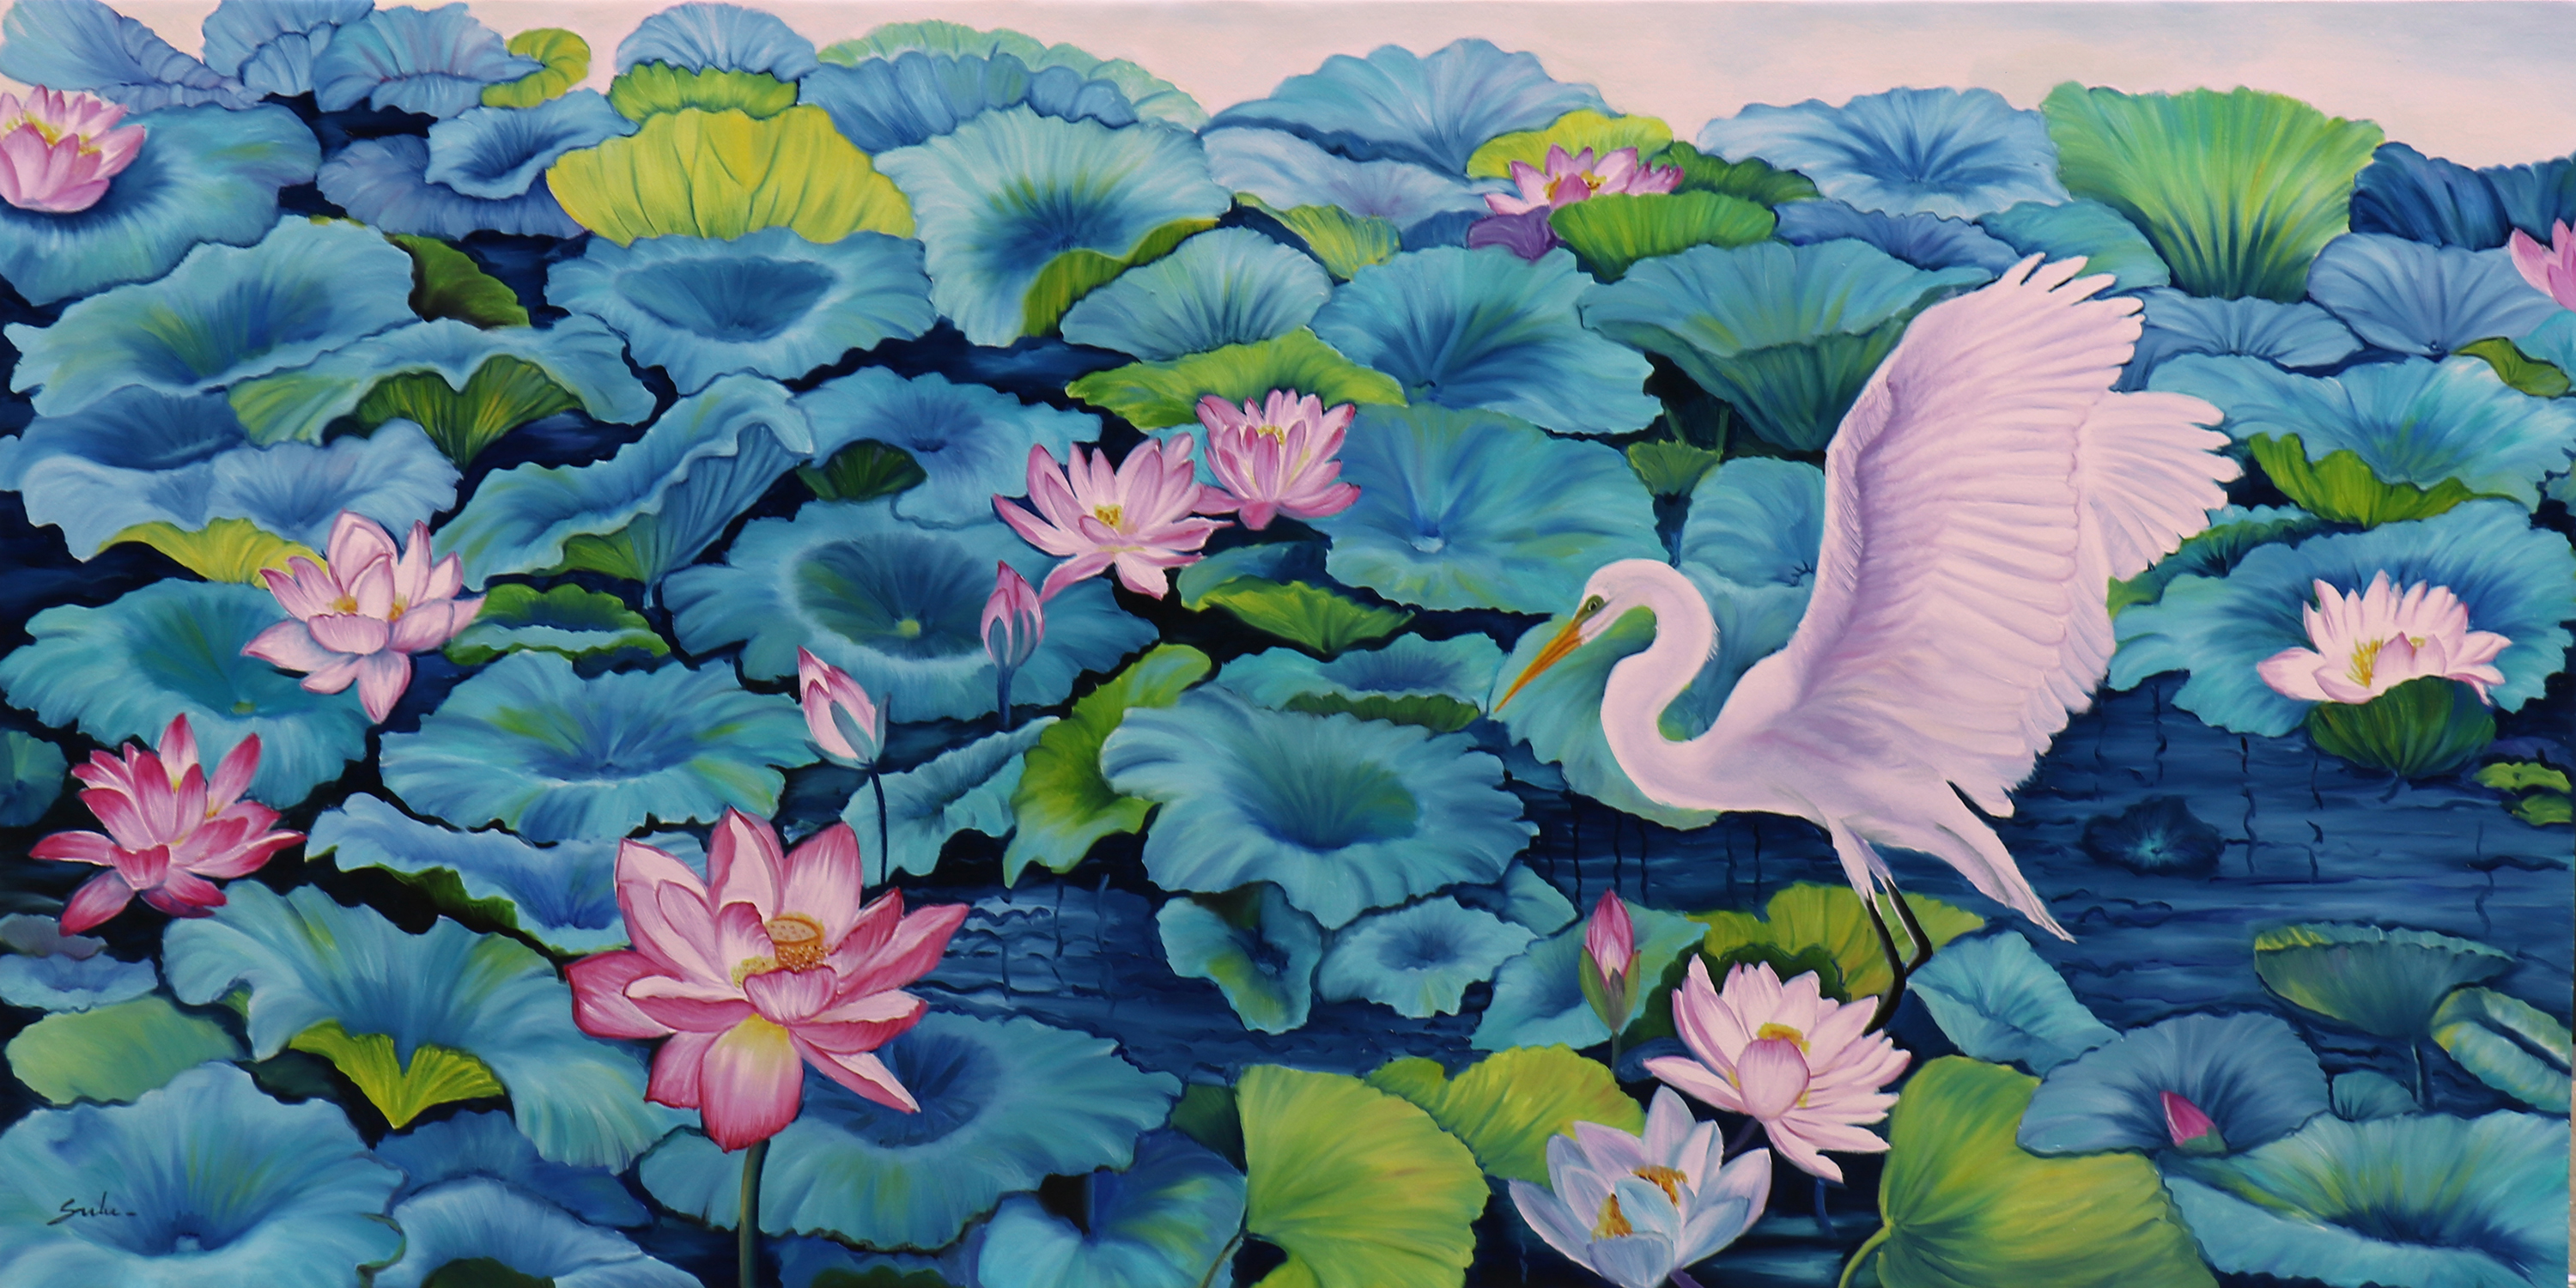 Lotus Pond 37 with Bird 